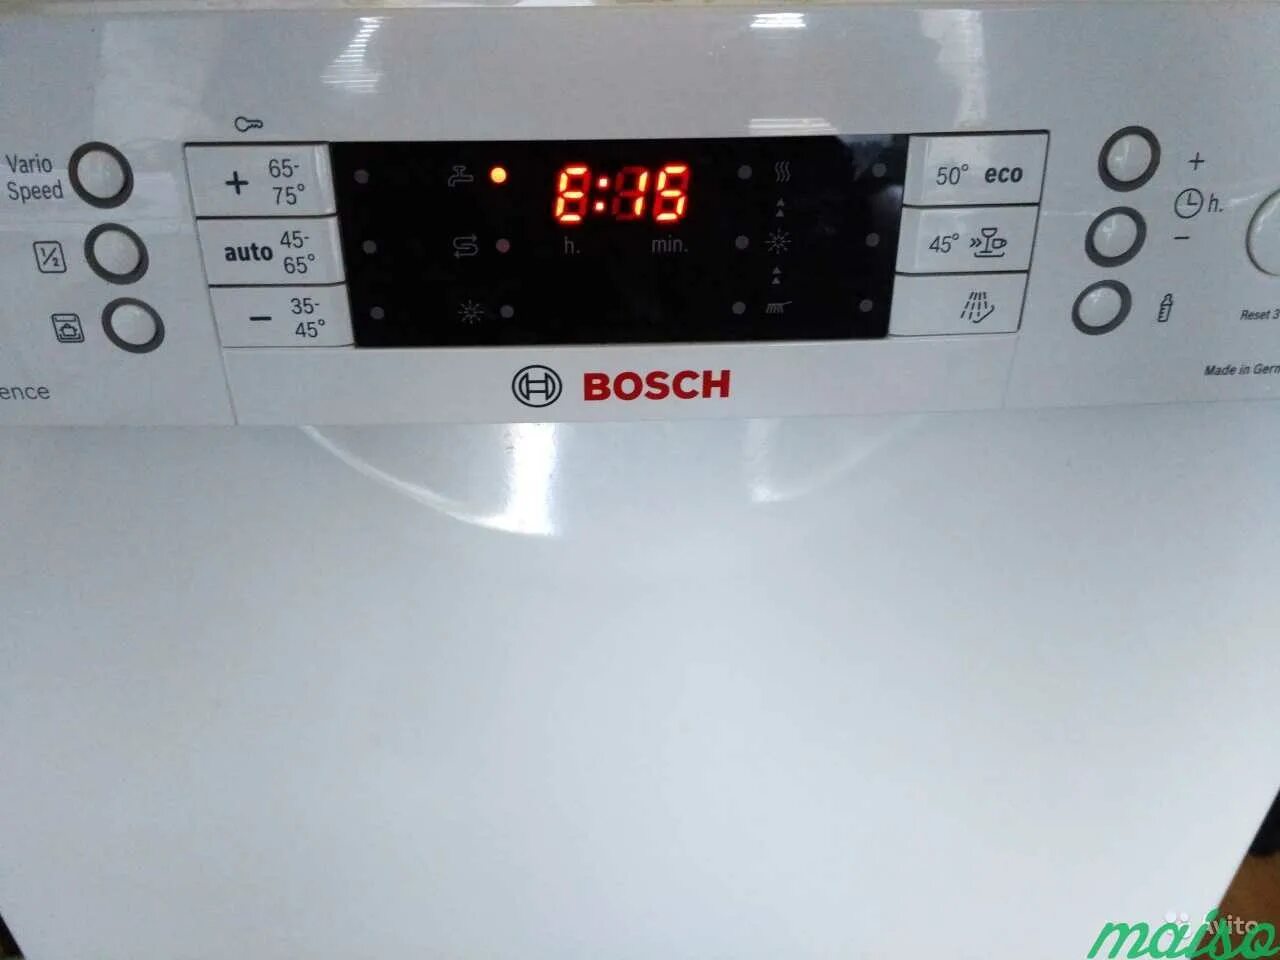 Е15 посудомойка бош. Посудомоечная бош ошибка е90. Ошибка посудомоечной машины Bosch е90. Посудомоечная машина бош ошибка е 19. ПММ бош ошибка е0.